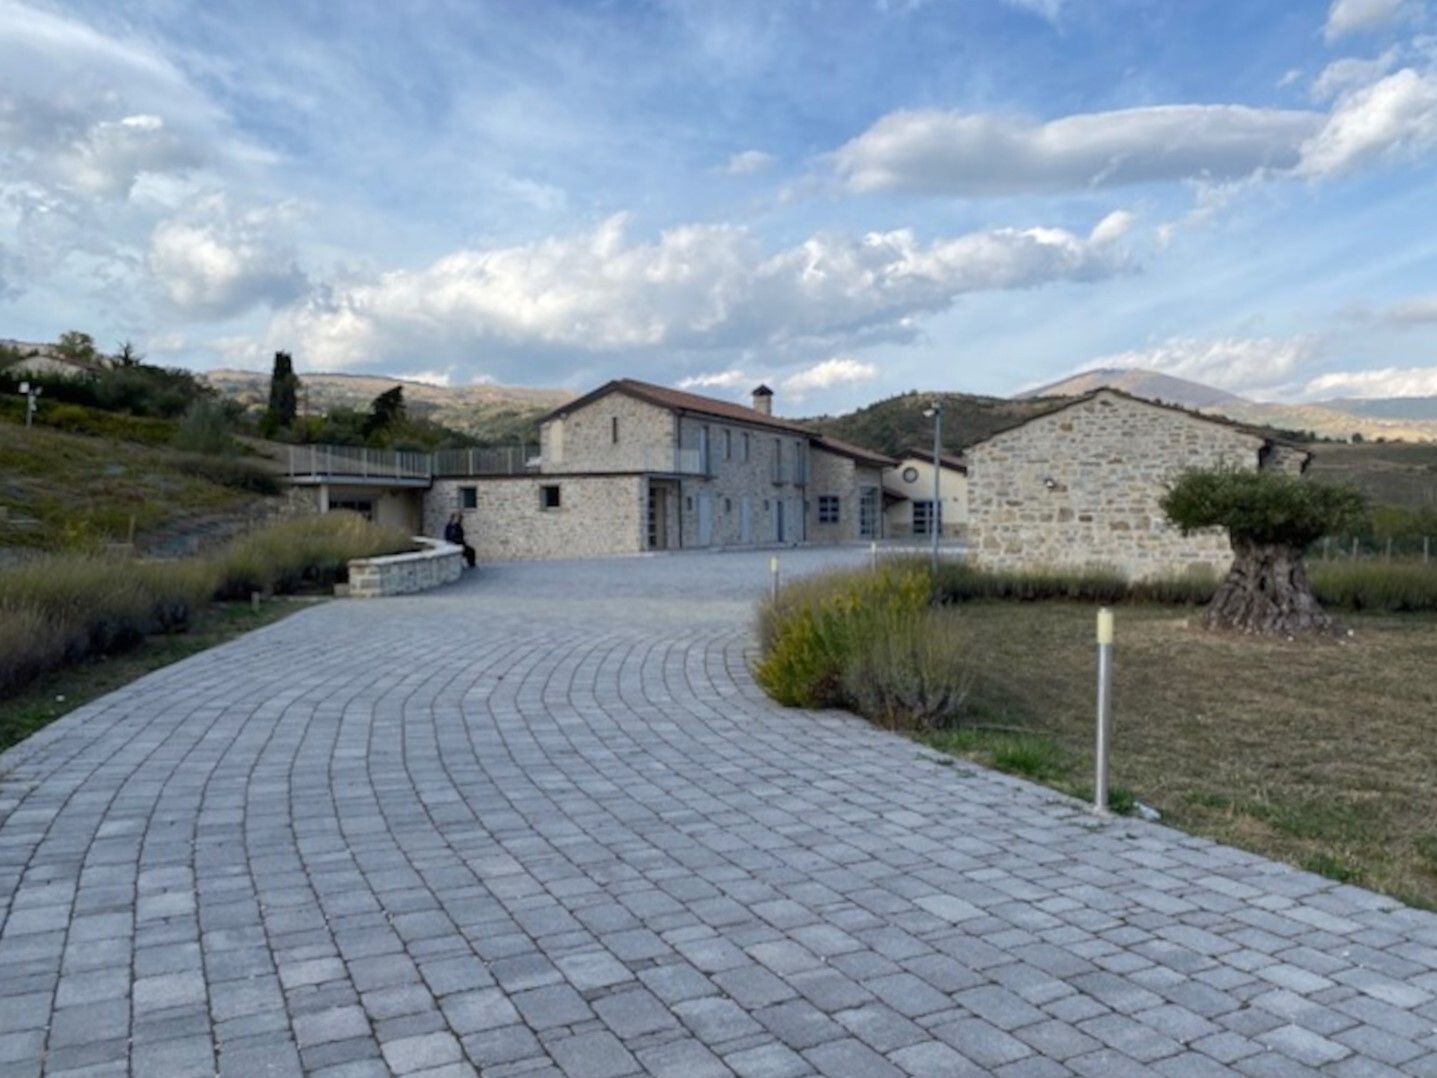 For sale villa in quiet zone Agnone Molise